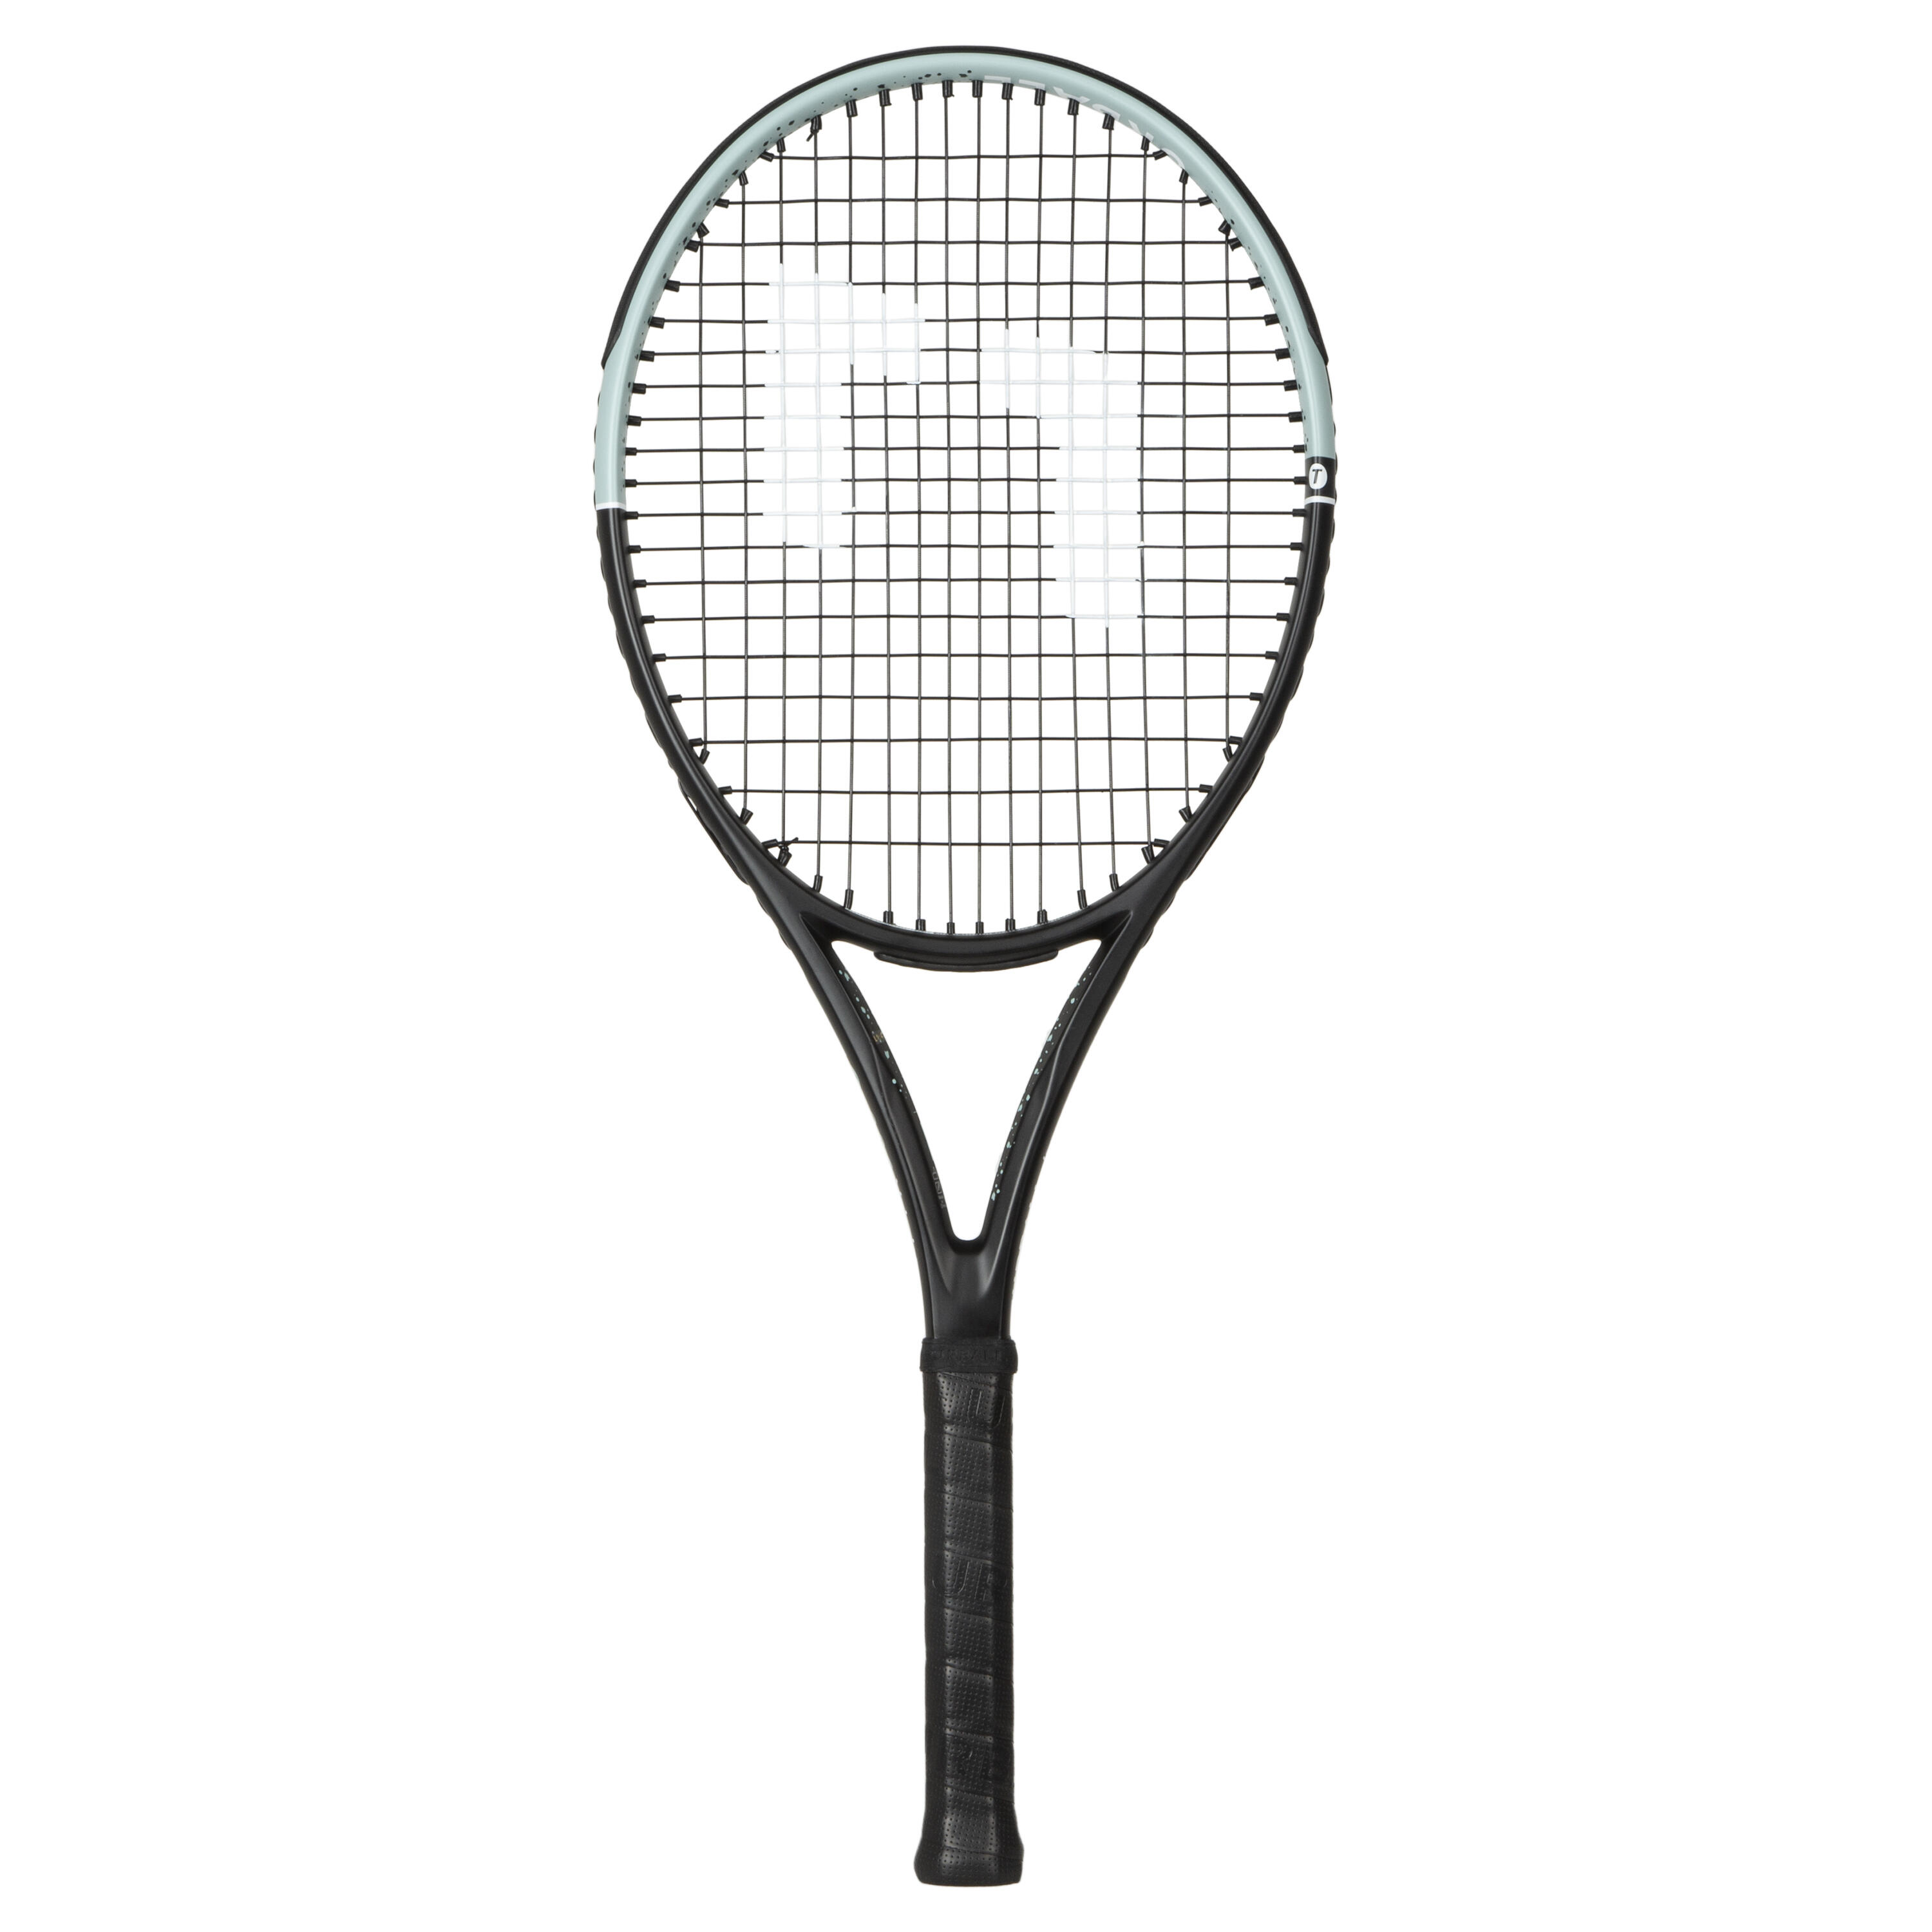 Передняя теннисная ракетка FTR100 URBALL пляжная теннисная ракетка gaivota color series 18k из углеродного волокна матовая пляжная теннисная ракетка с рюкзаком